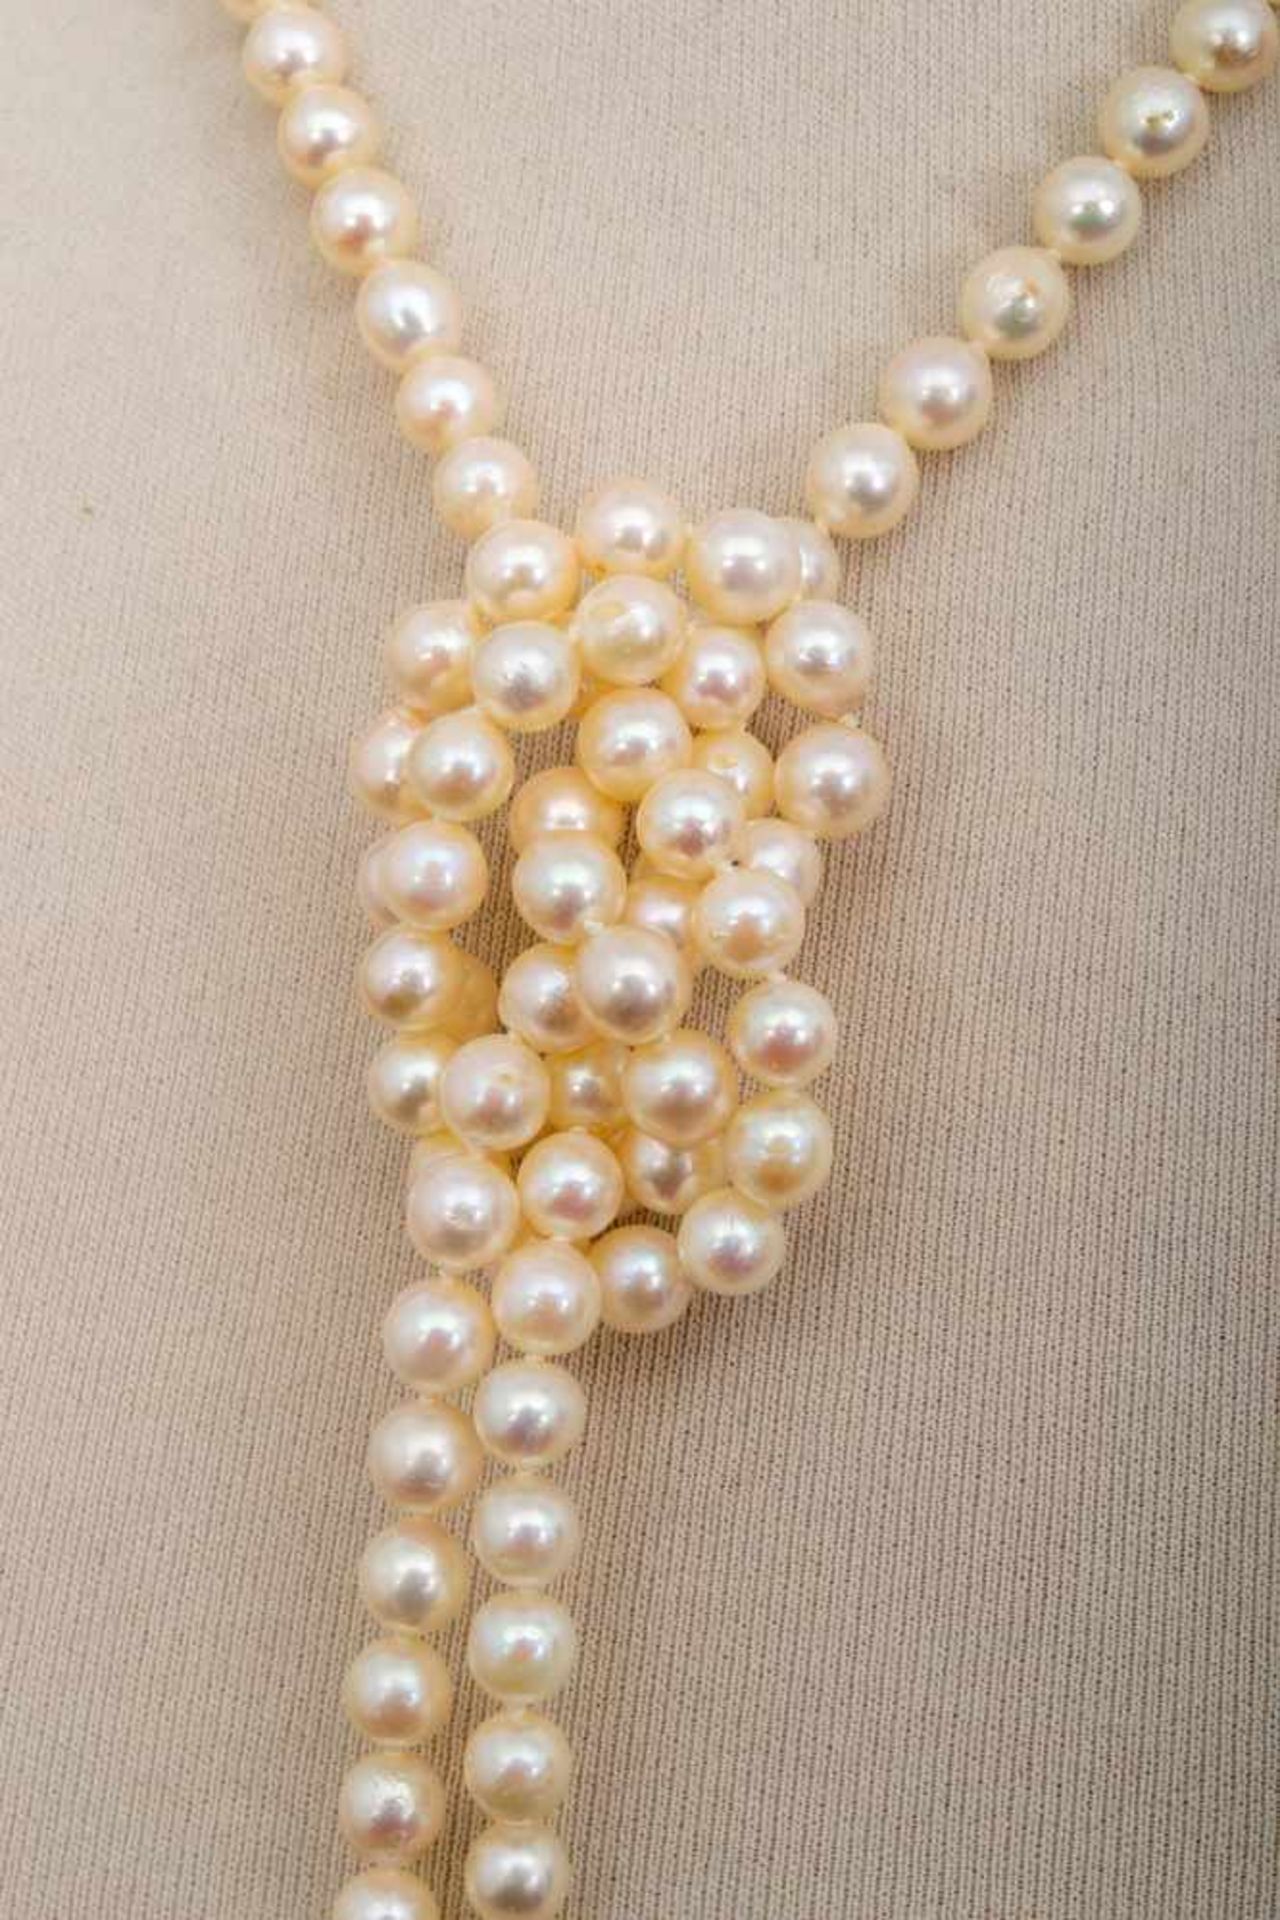 Lange Perlenkette, ca. 125 cm, Durchmesser der einzeln geknoteten Perlen ca. 6 mm.- - -20.00 % - Image 7 of 7